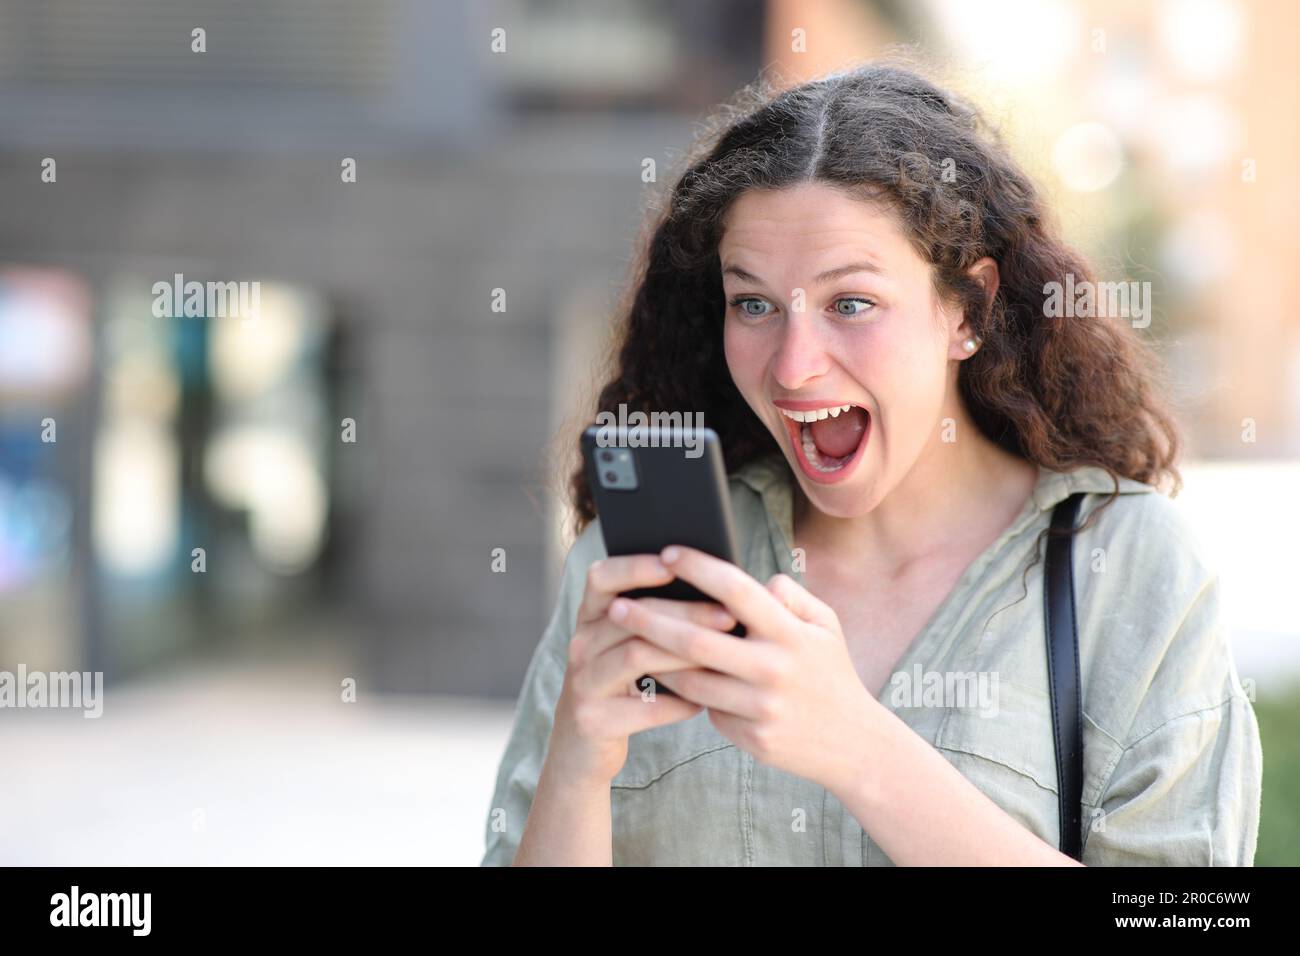 Aufgeregte Frau, die auf der Straße unterwegs auf dem Telefon fantastische Inhalte ansieht Stockfoto